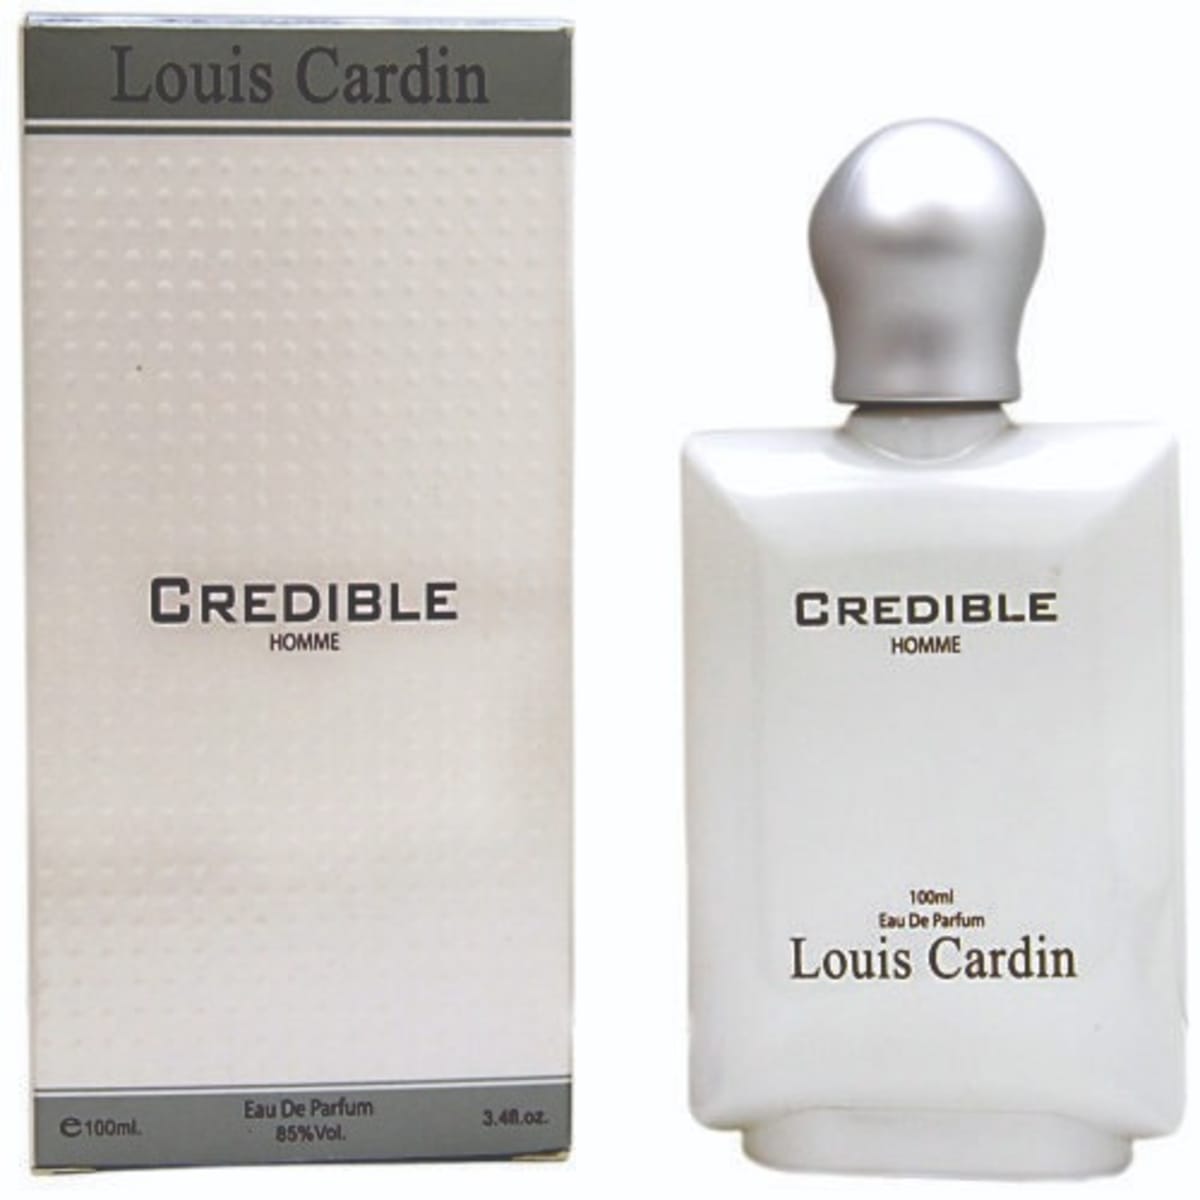 Louis Cardin Eau de Parfum Gold 100ml - Online Super Market